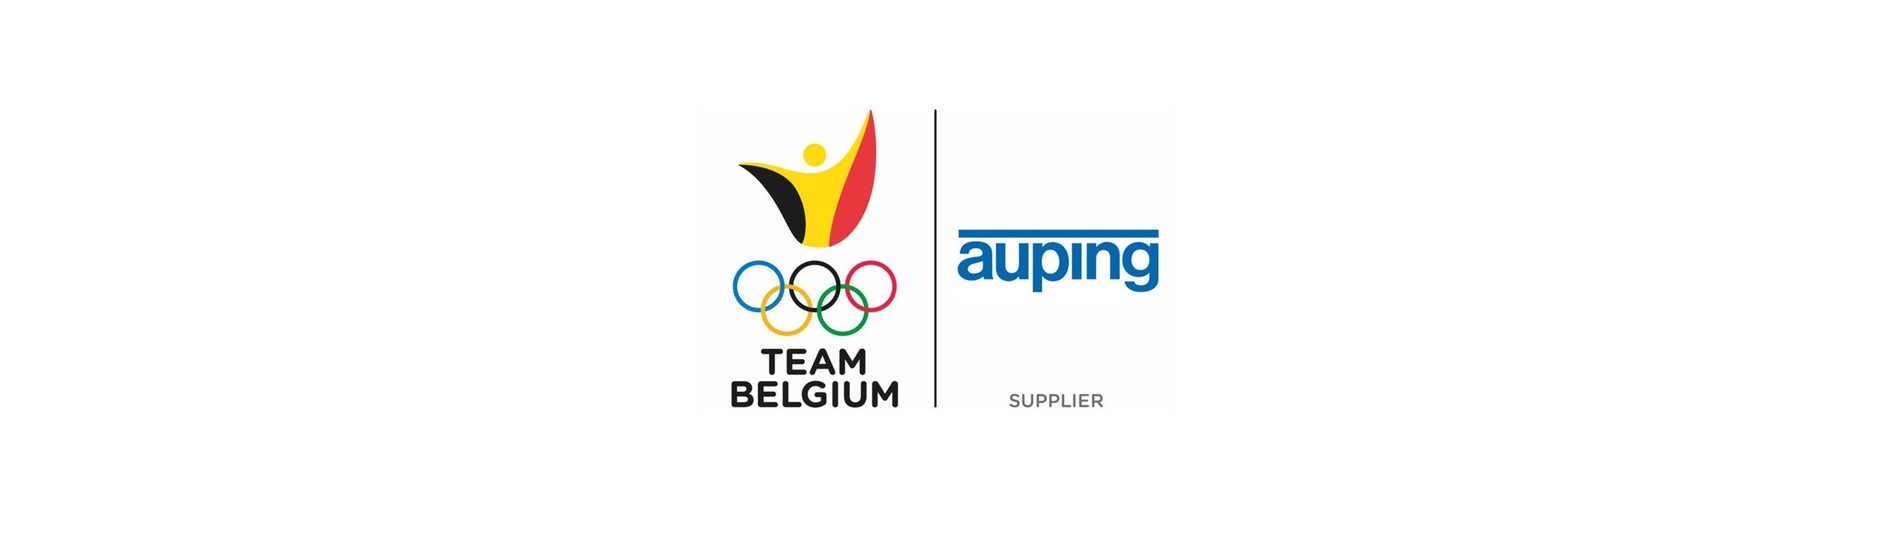 Tokyo 2020 : la Team Belgium dormira dans des lits Auping